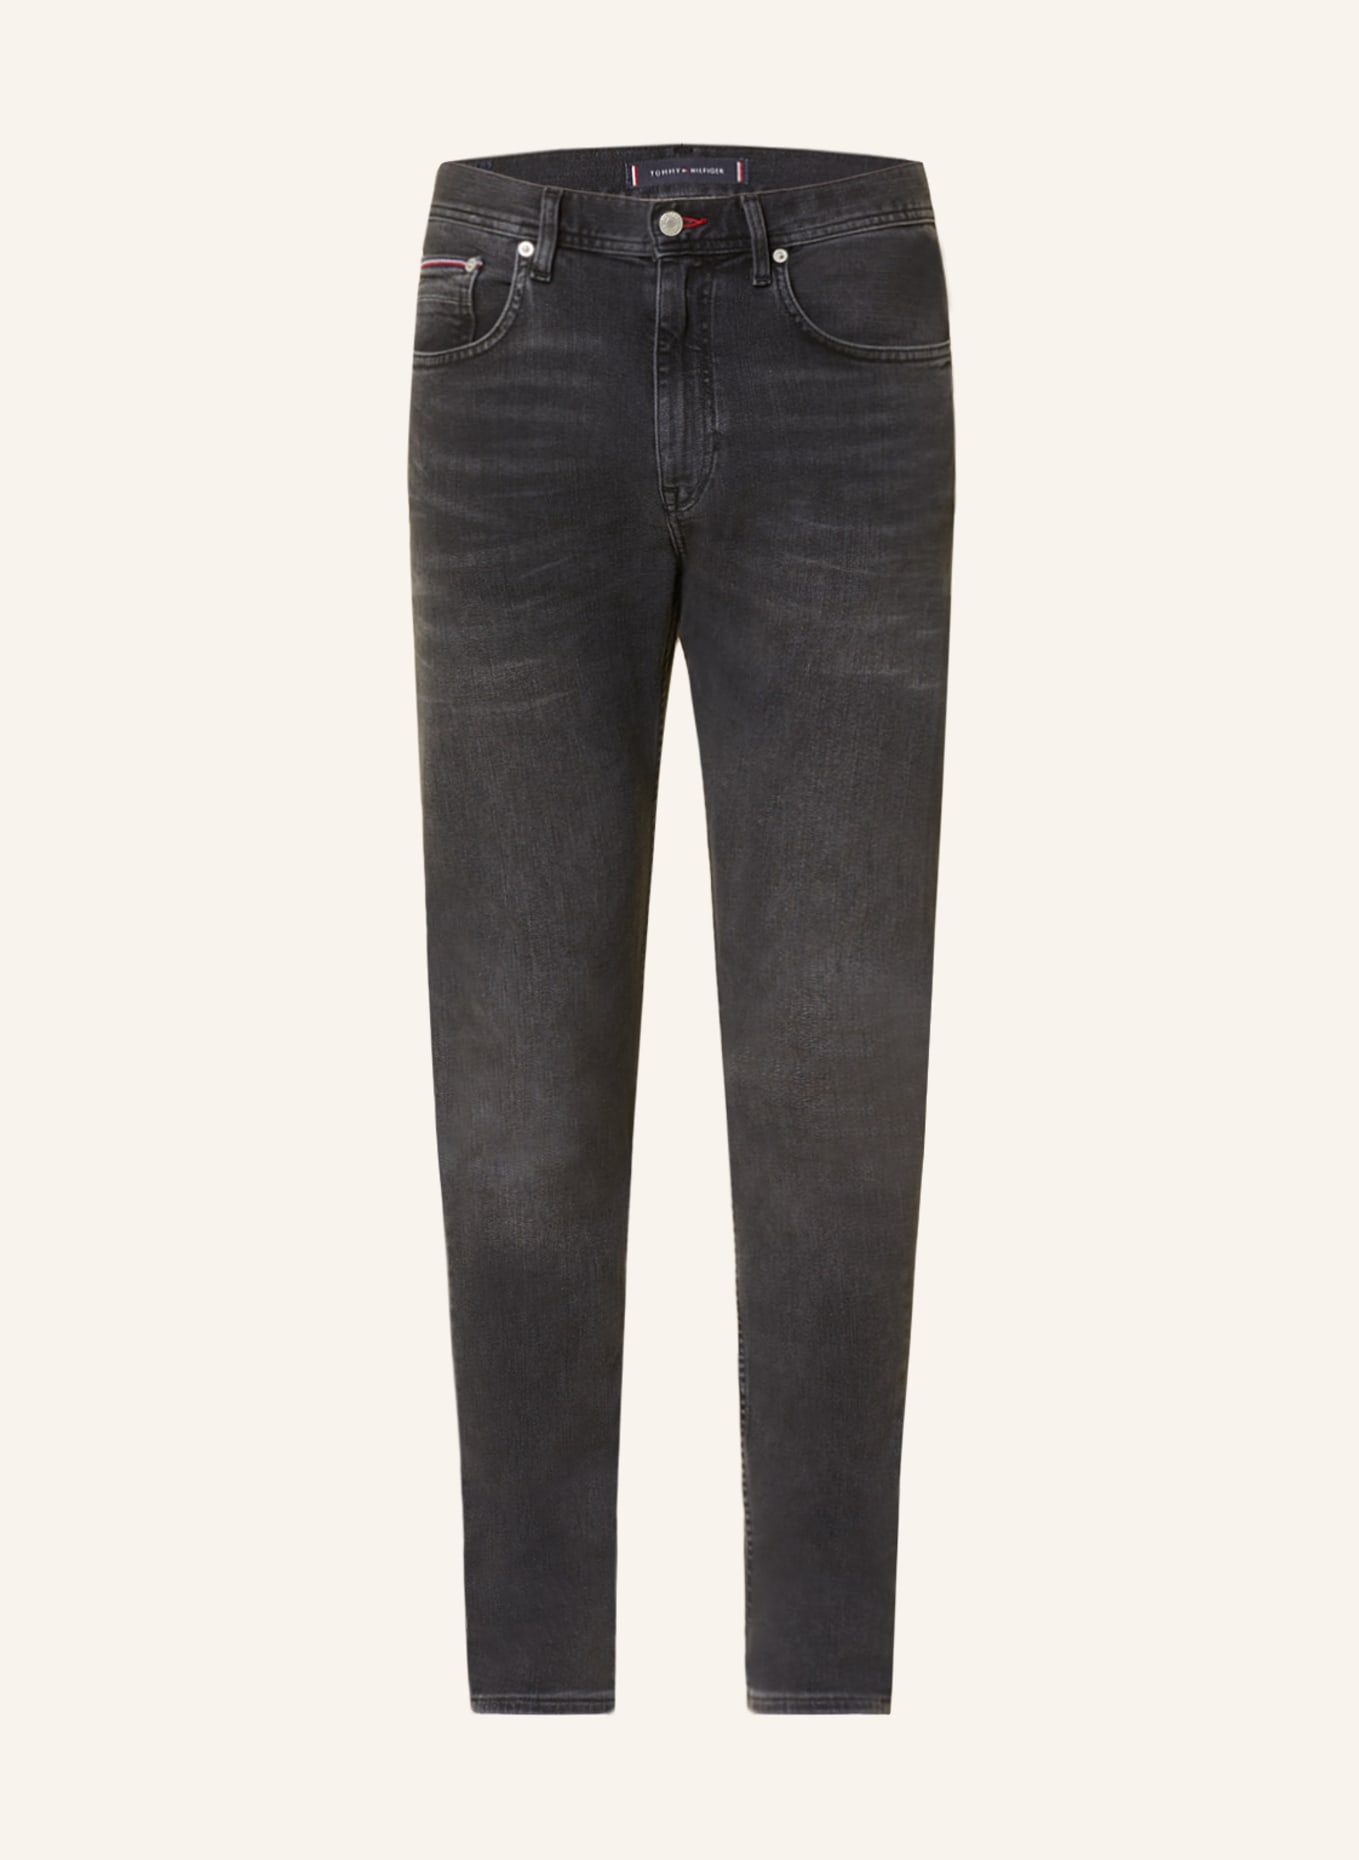 TOMMY HILFIGER Jeans HOUSTON Slim Taper Fit, Farbe: 1B9 Branson Grey (Bild 1)